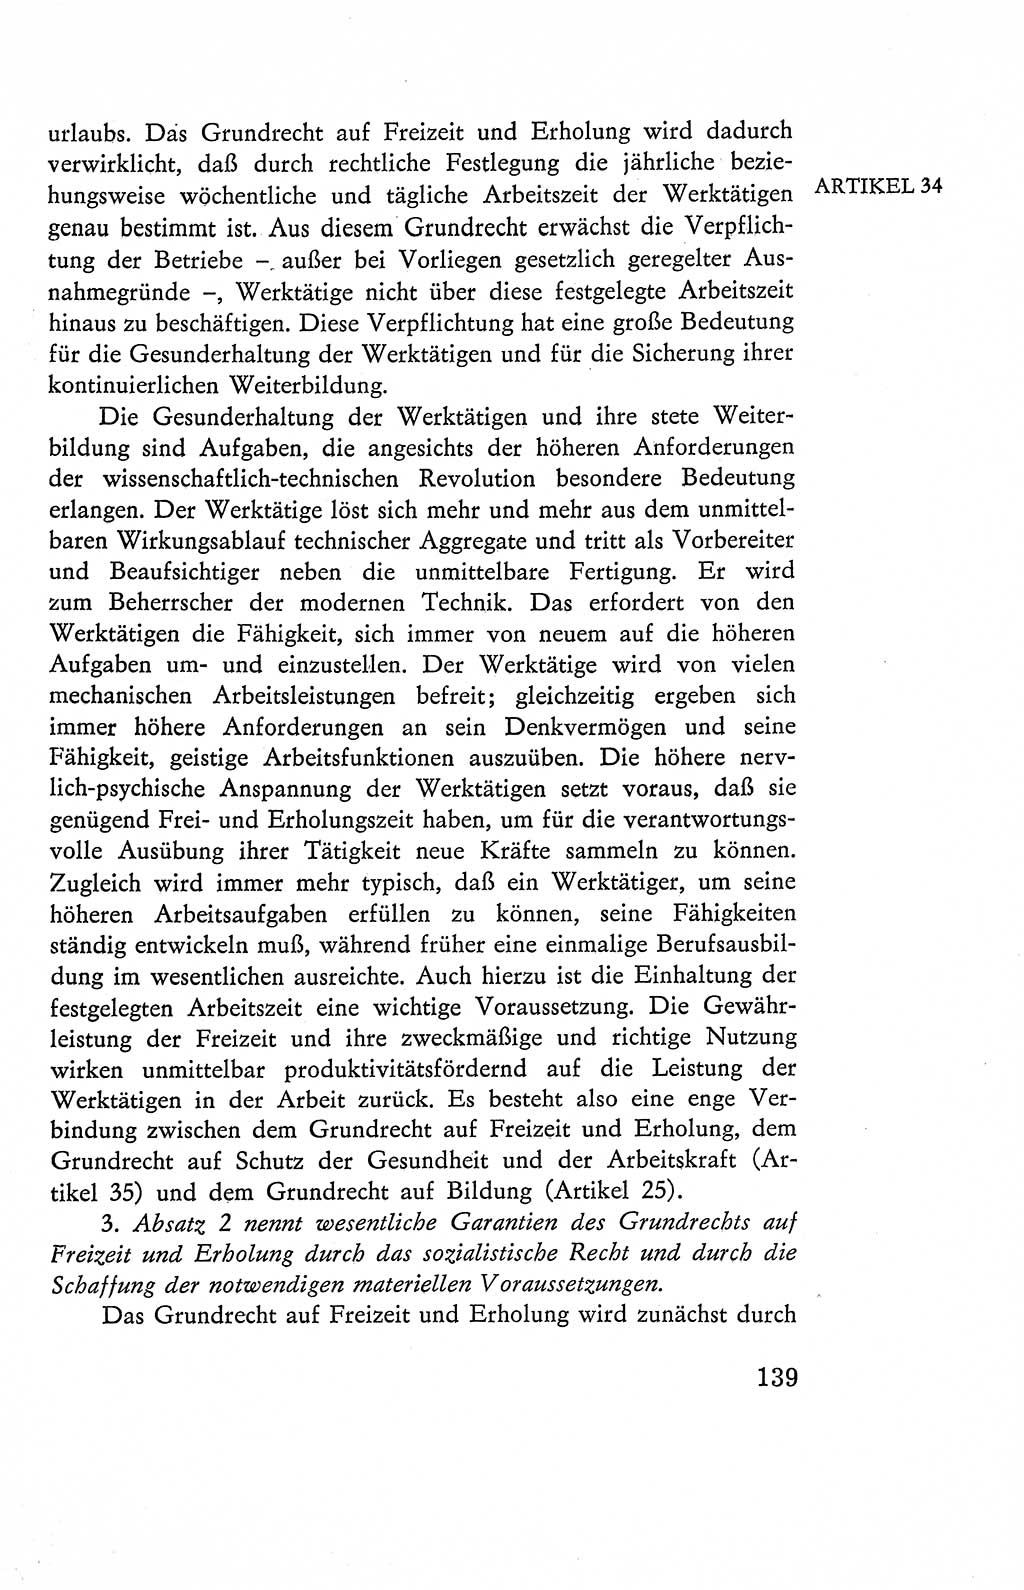 Verfassung der Deutschen Demokratischen Republik (DDR), Dokumente, Kommentar 1969, Band 2, Seite 139 (Verf. DDR Dok. Komm. 1969, Bd. 2, S. 139)